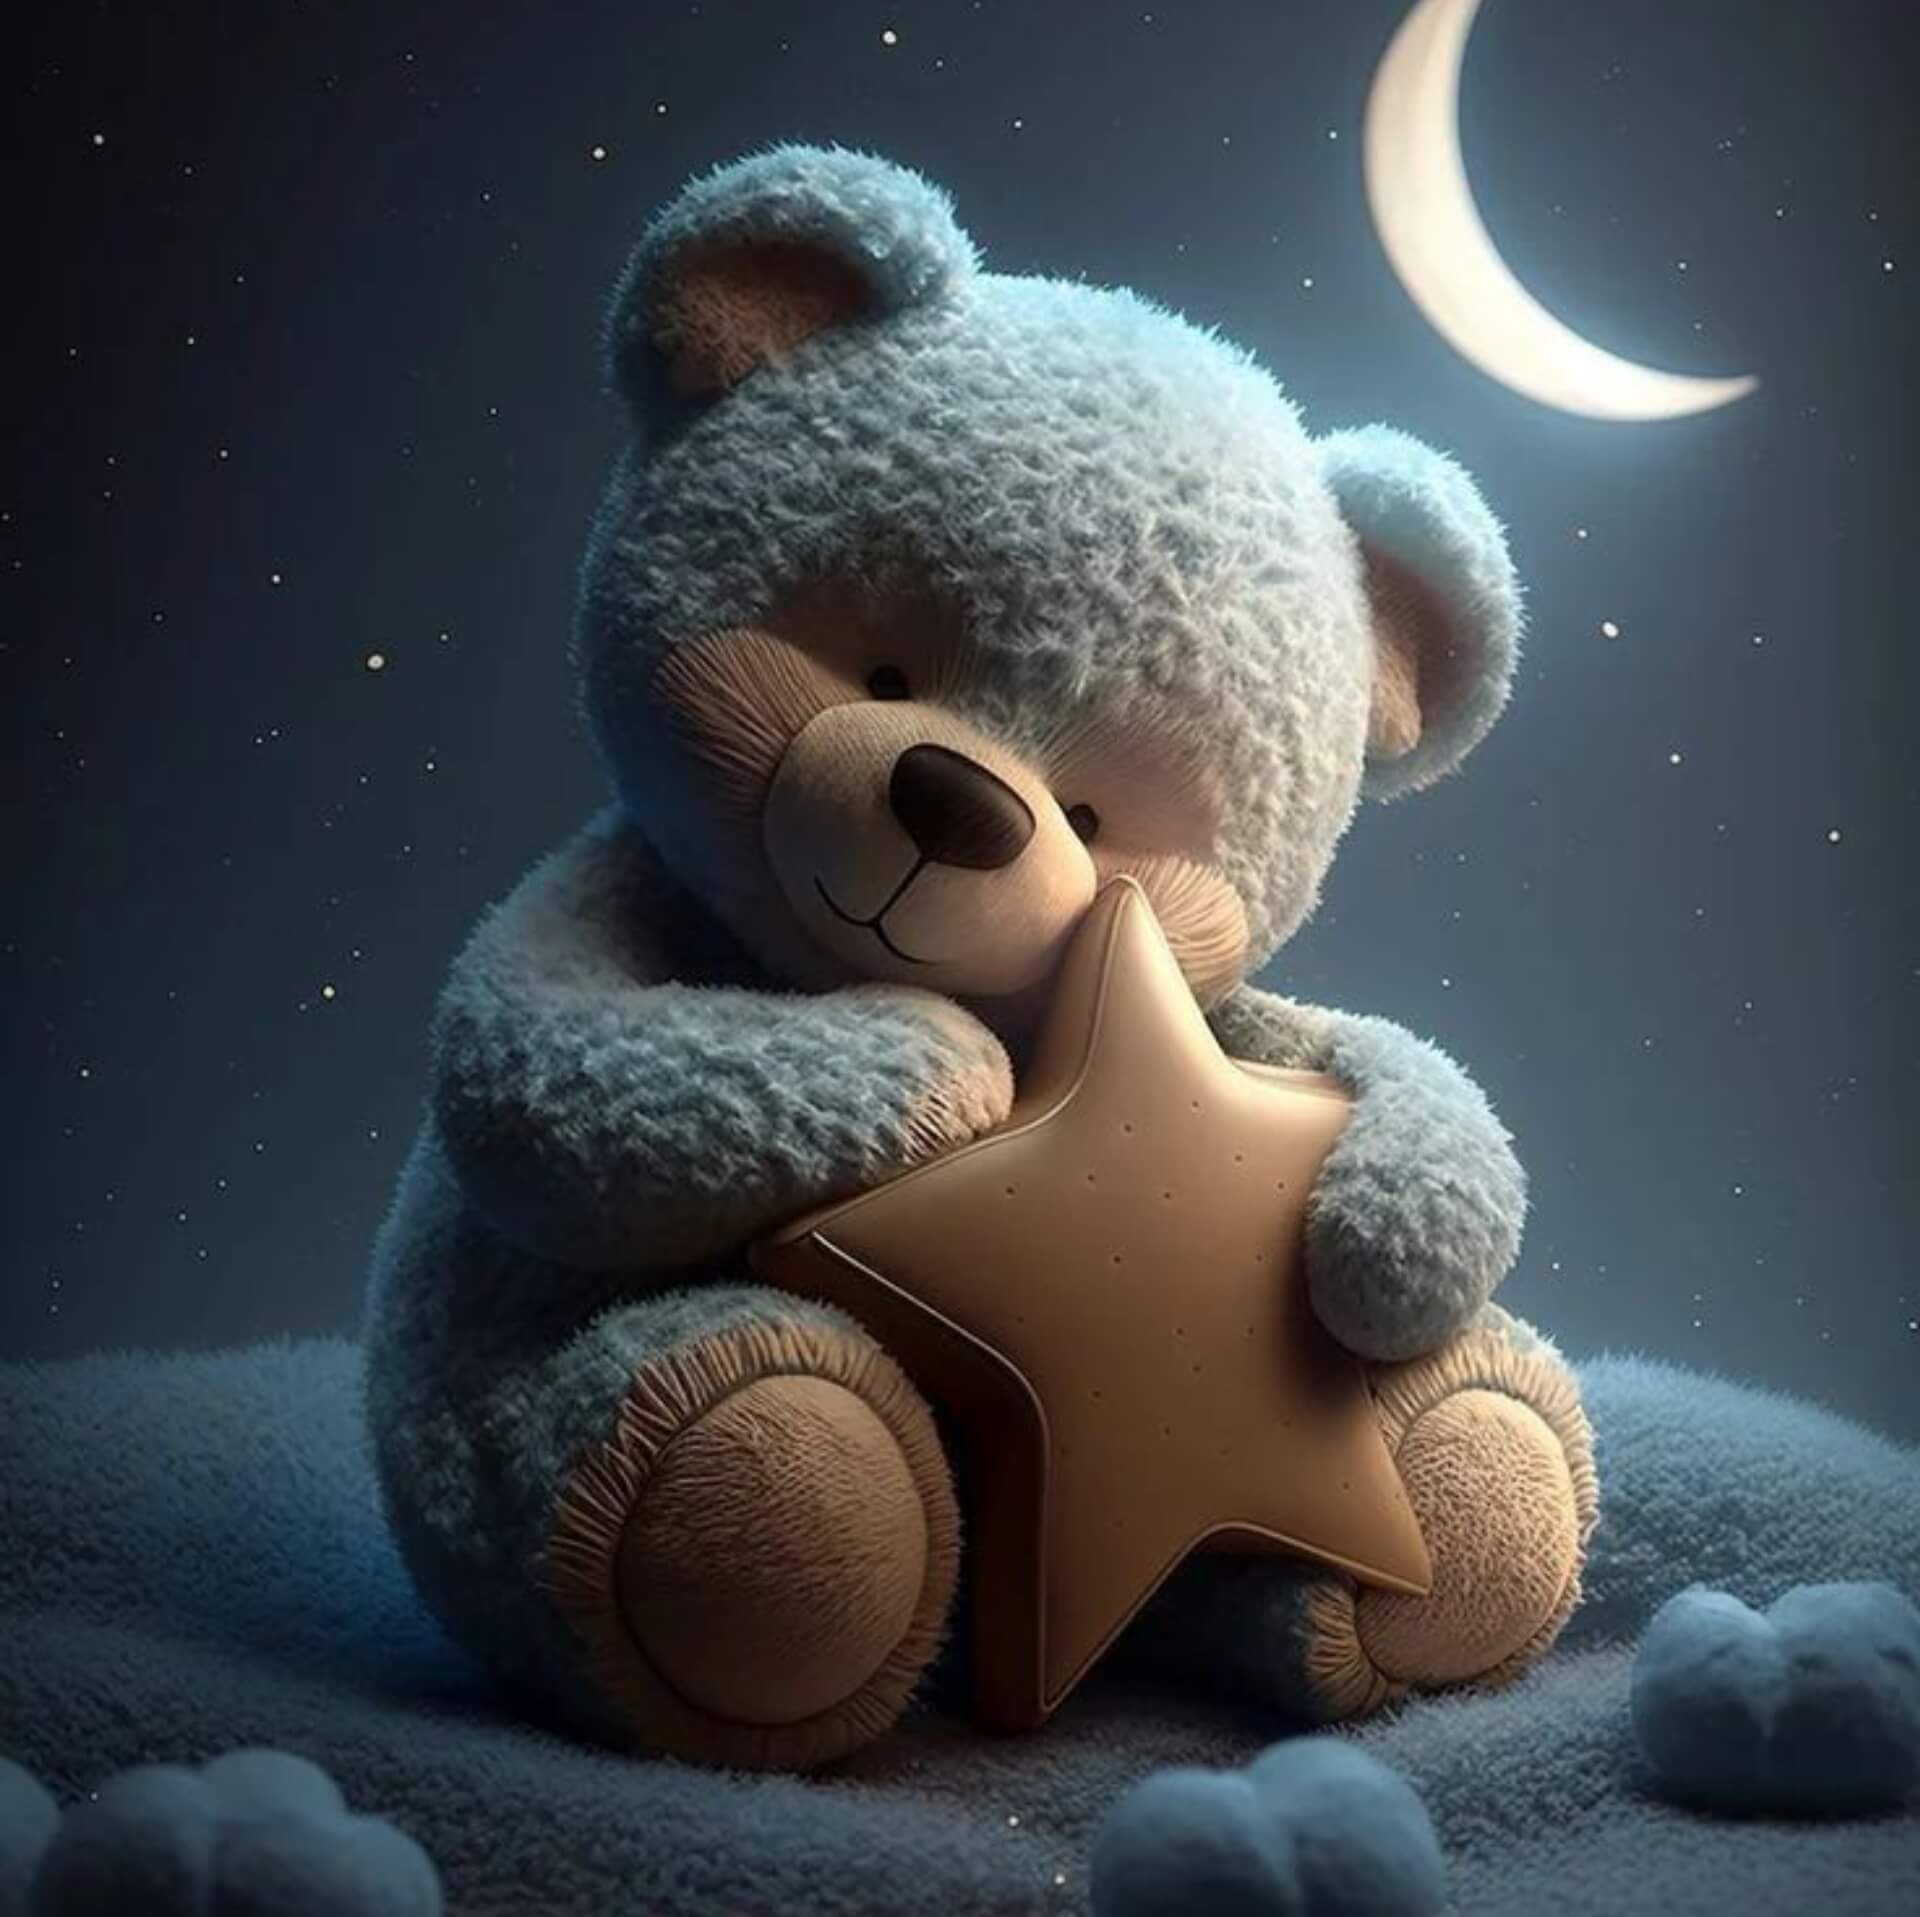 Cute Teddy Bear WhatsApp DP